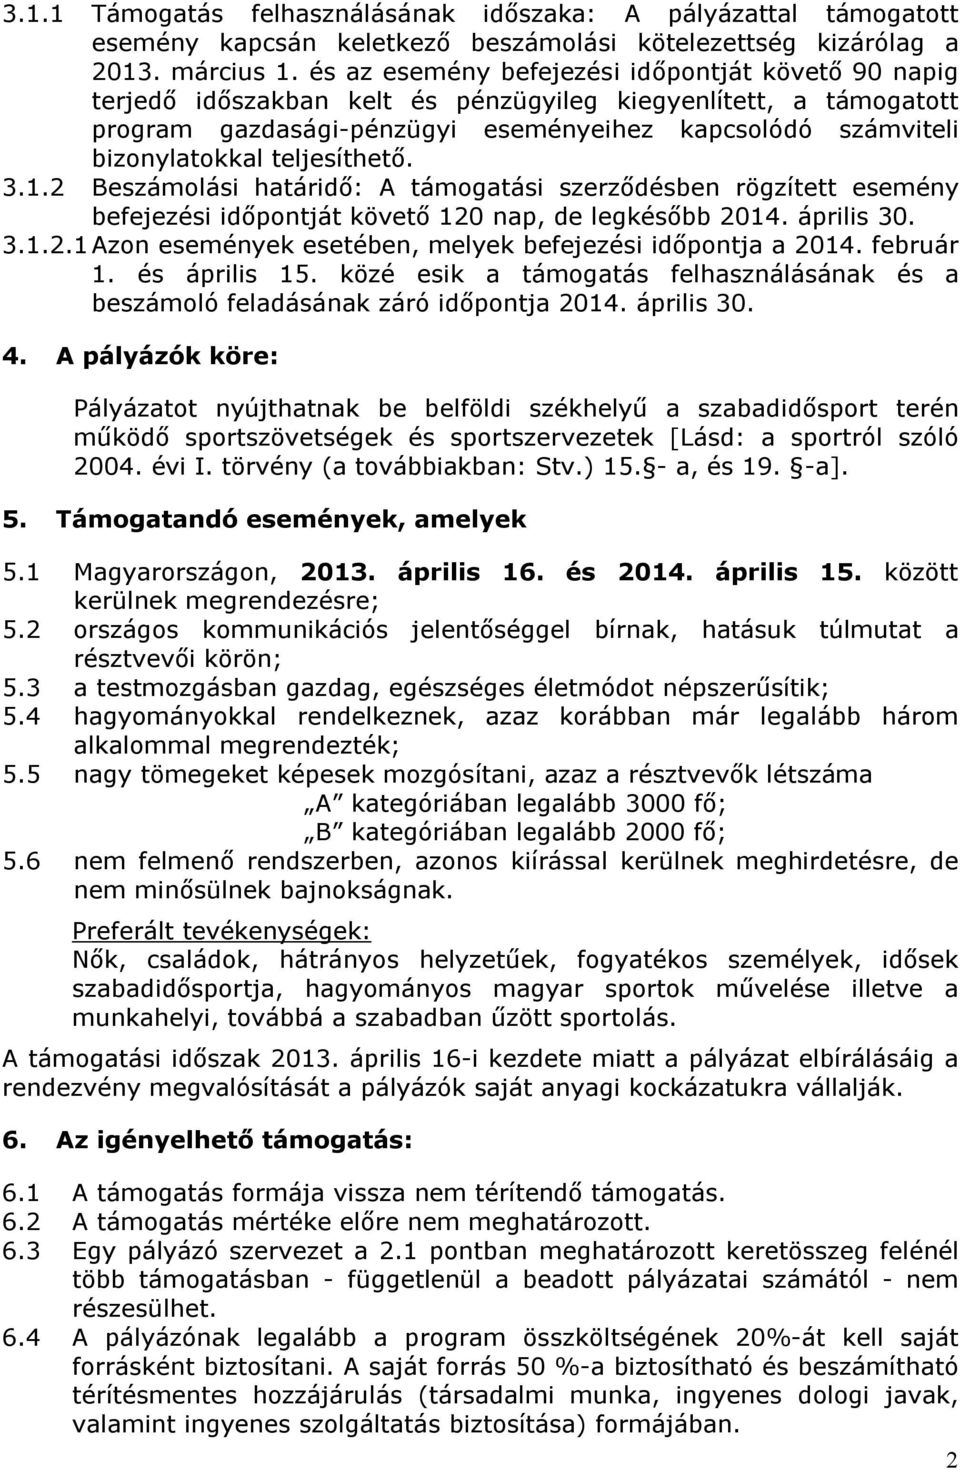 teljesíthető. 3.1.2 Beszámolási határidő: A támogatási szerződésben rögzített esemény befejezési időpontját követő 120 nap, de legkésőbb 2014. április 30. 3.1.2.1 Azon események esetében, melyek befejezési időpontja a 2014.